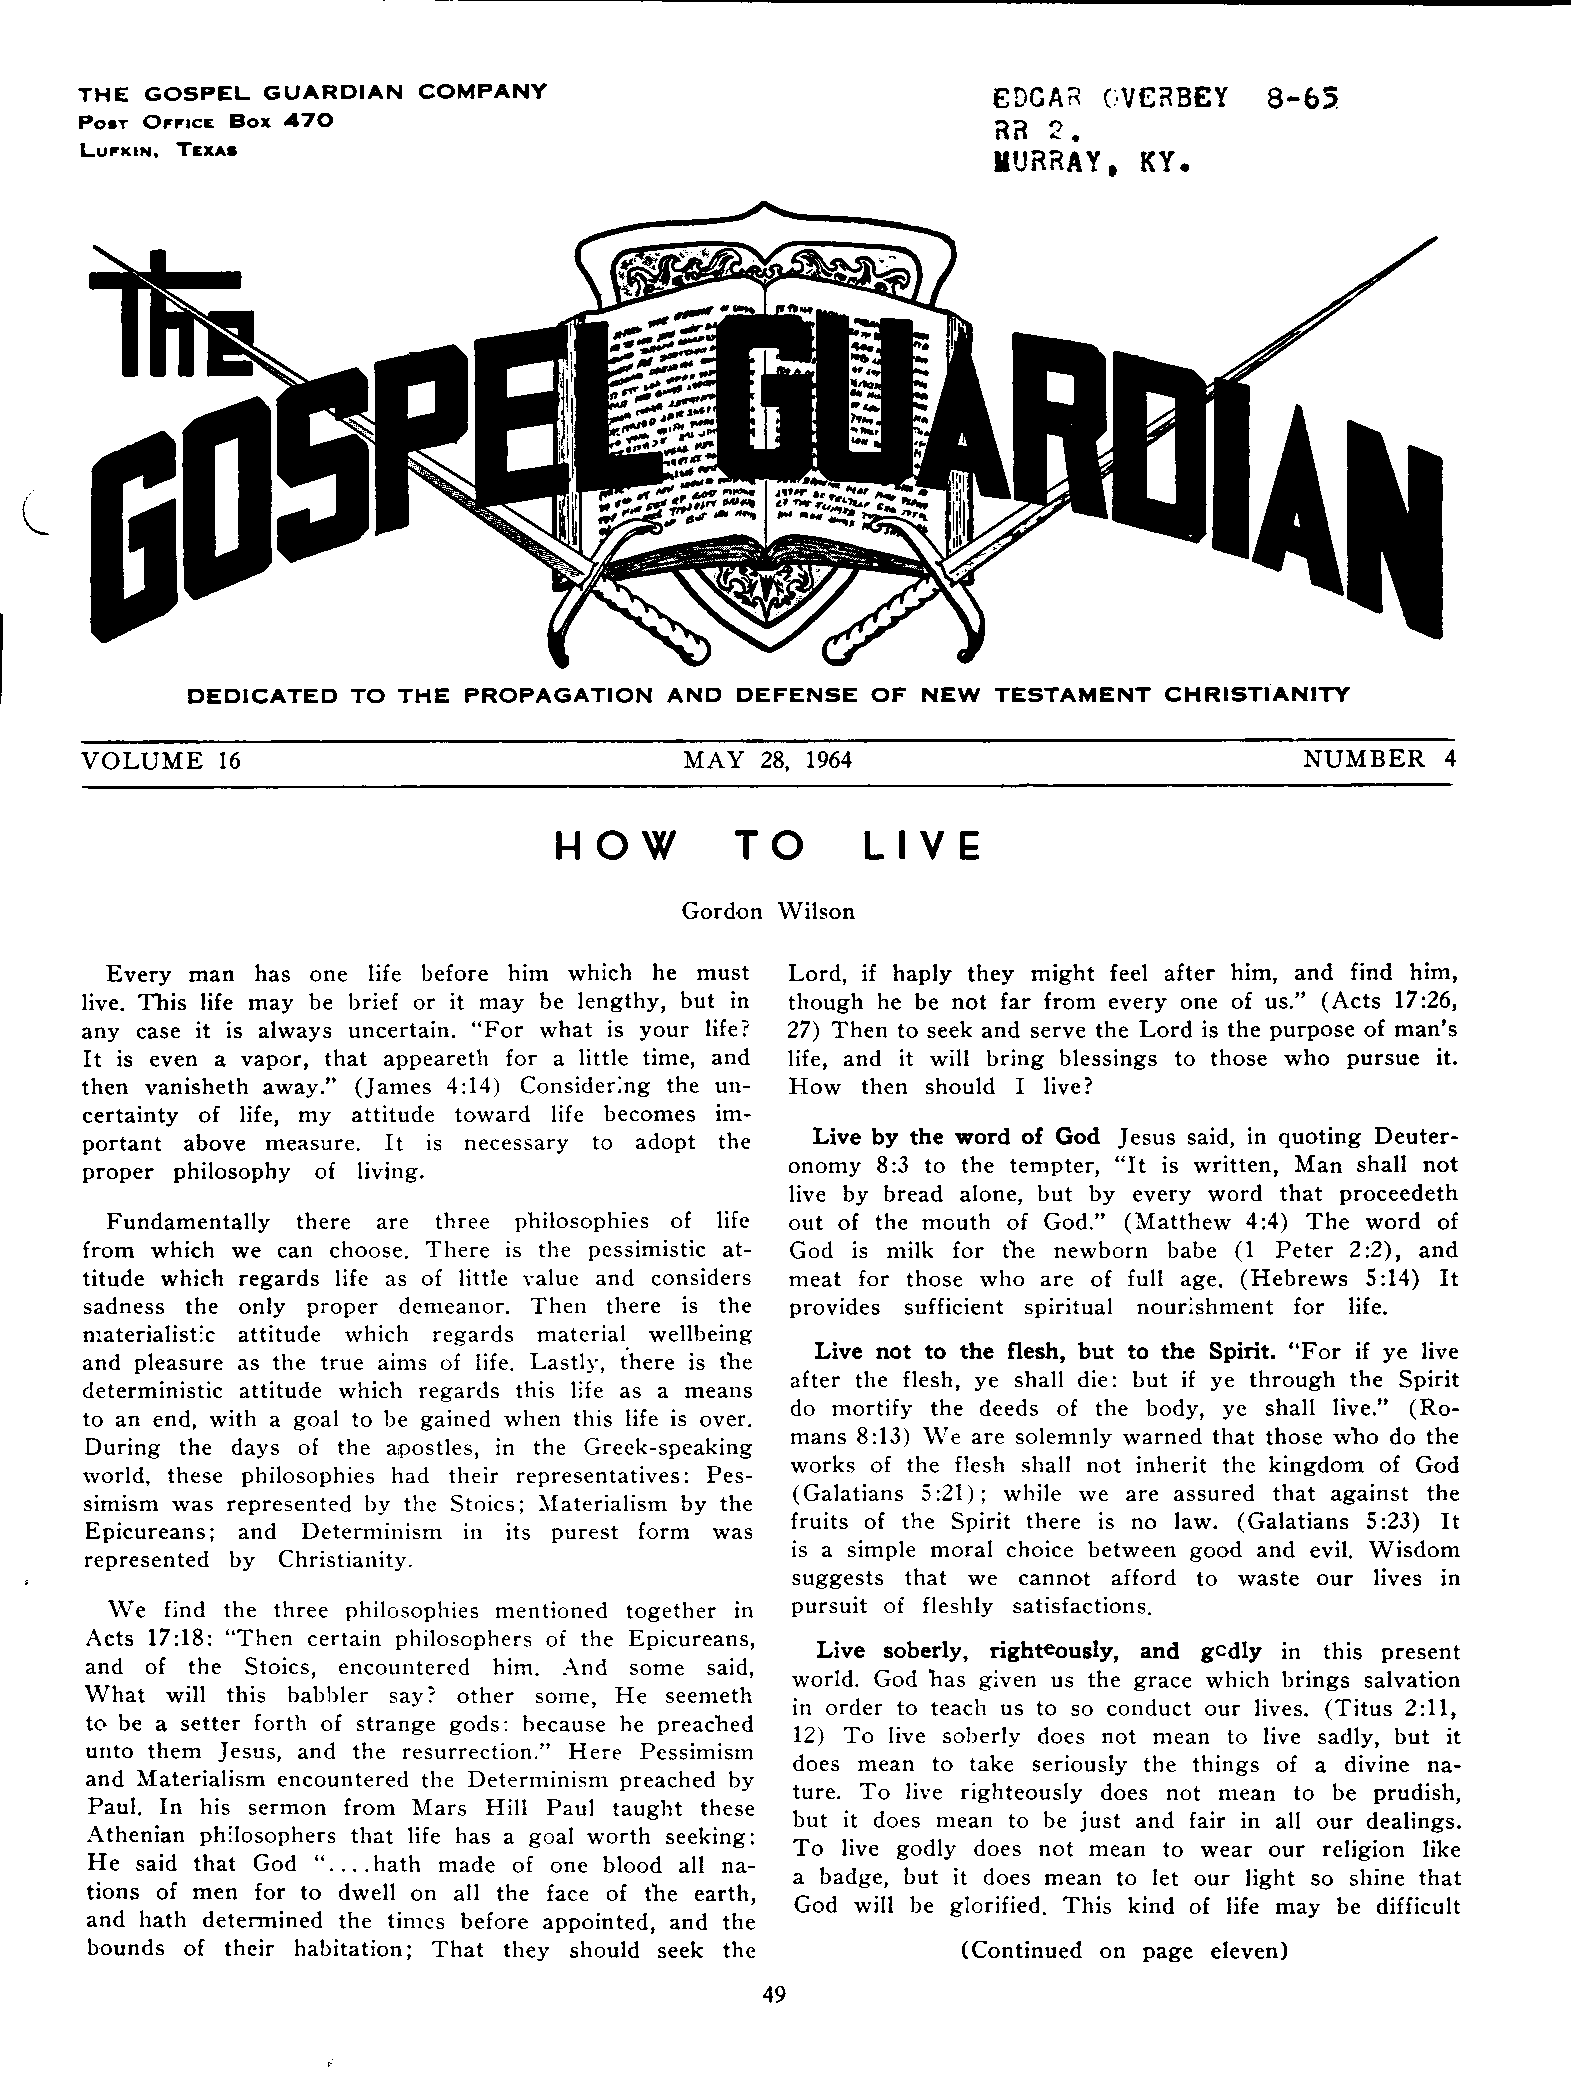 Gospel Guardian Original: Vol.16 No.4 Pg.1